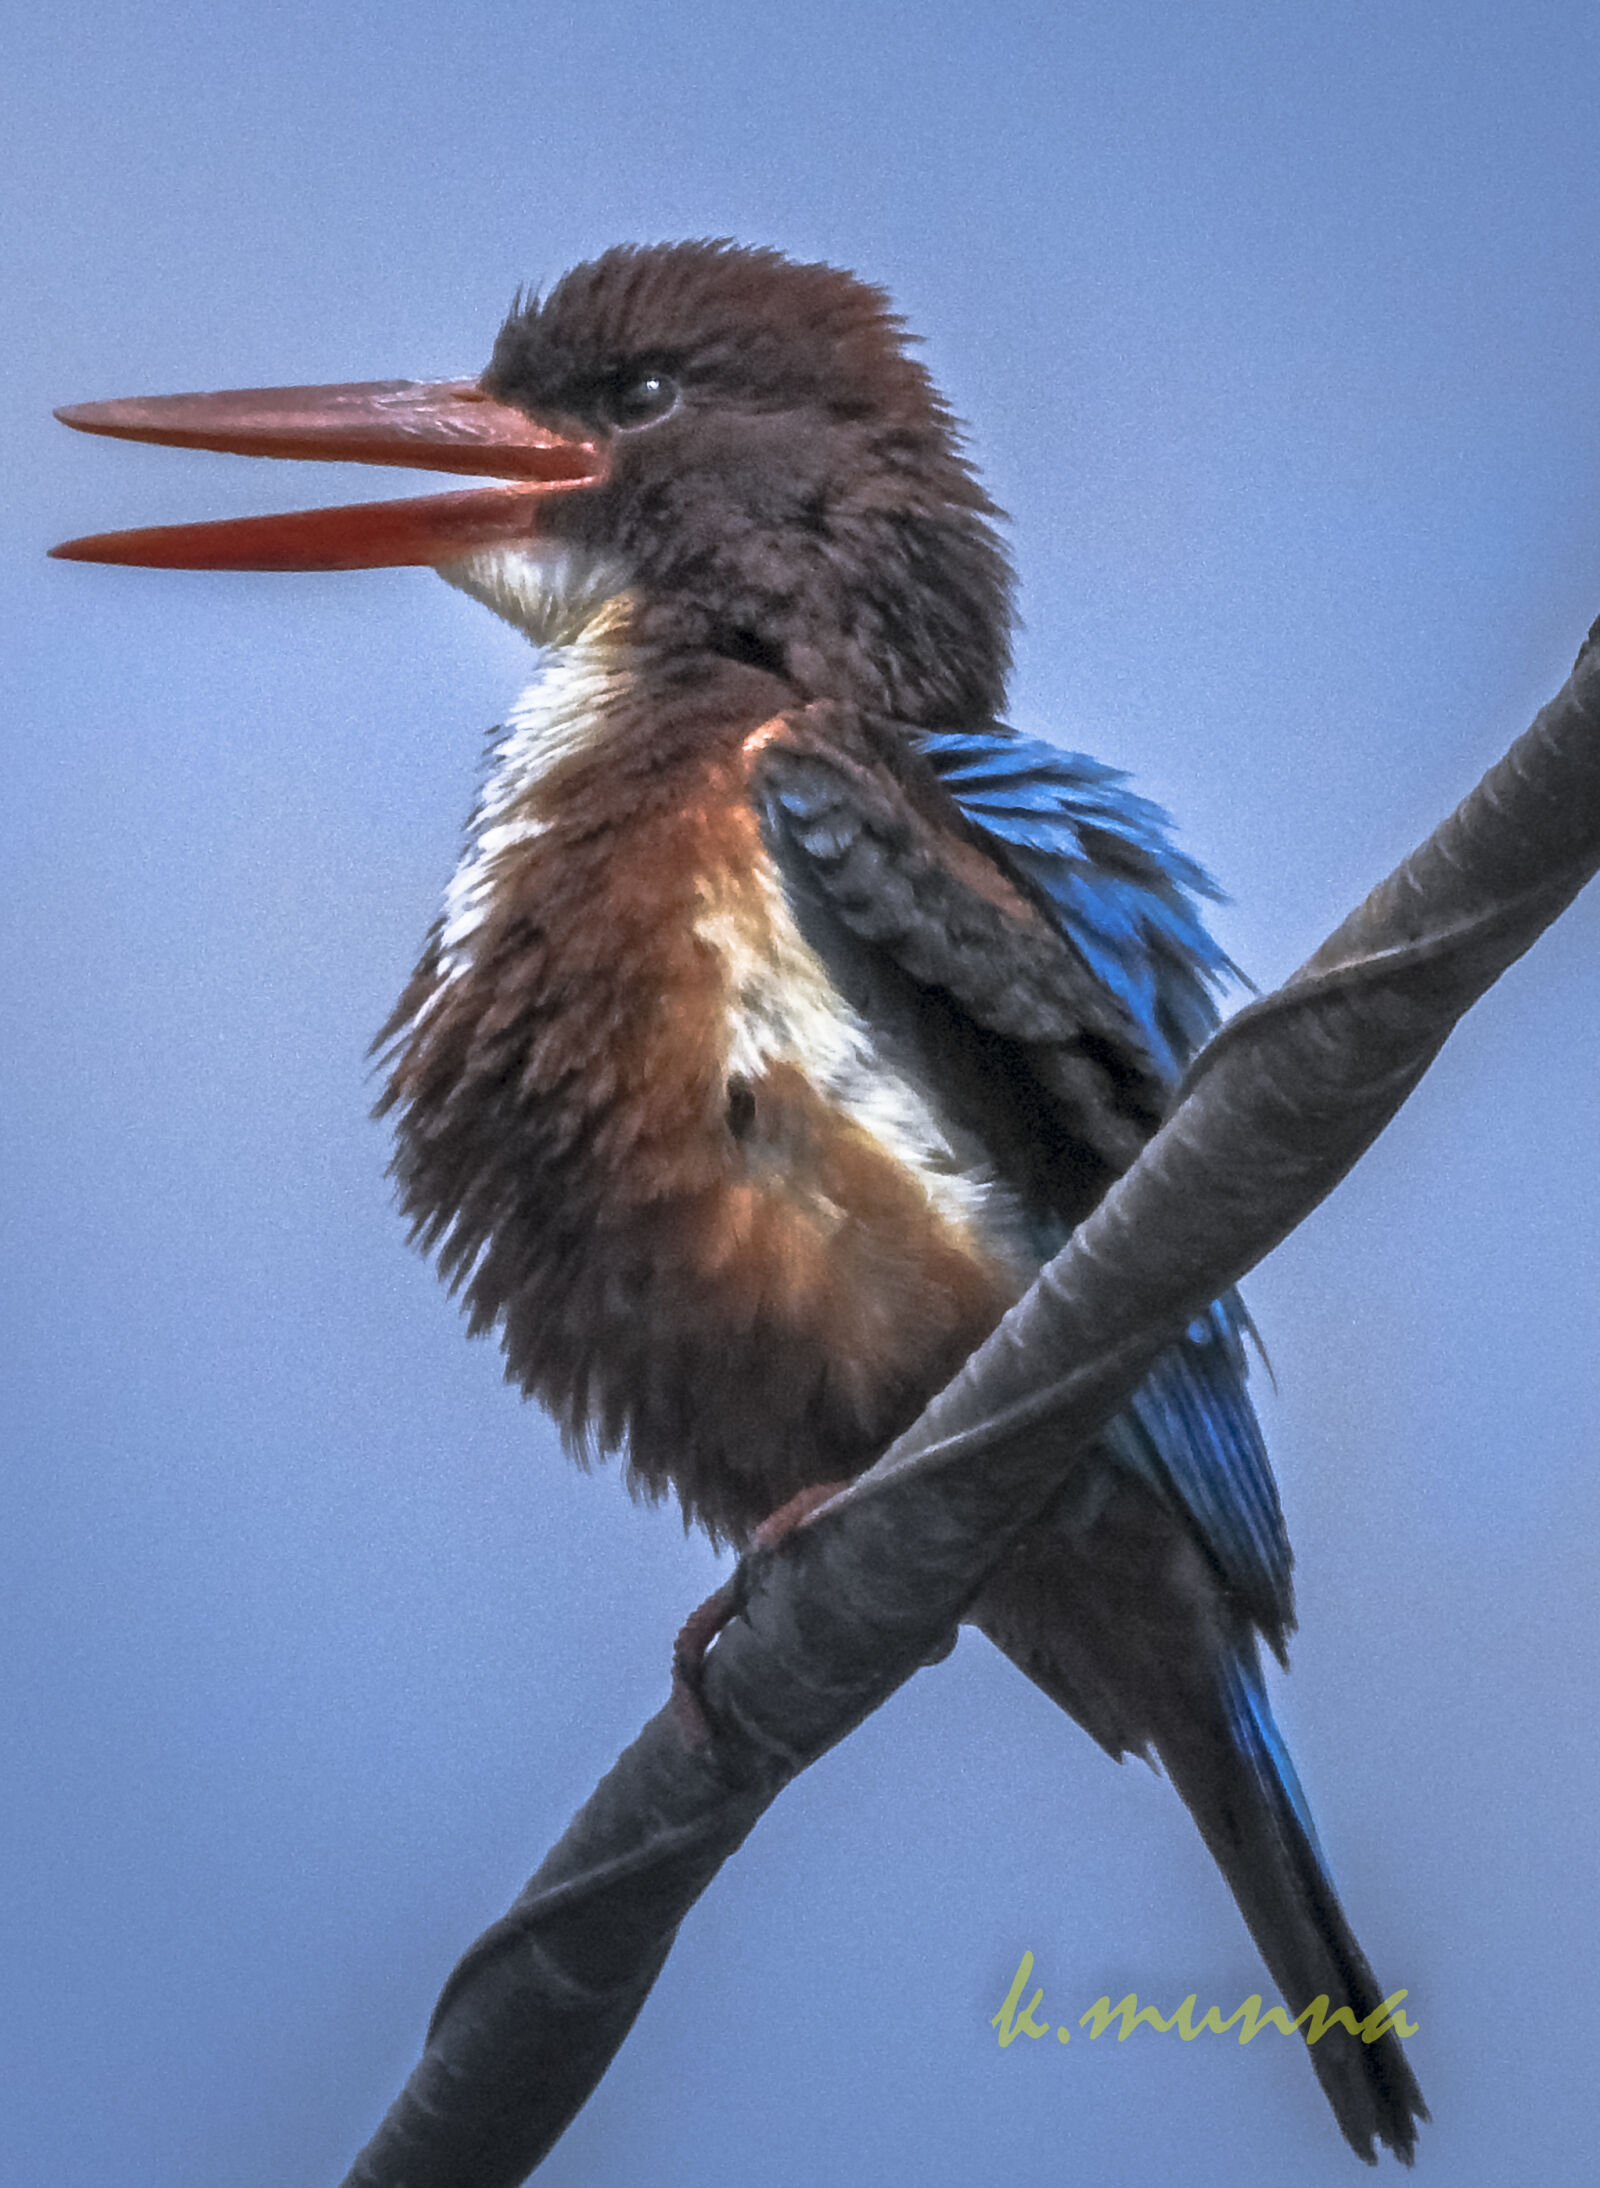 Nikon Coolpix P900 sample photo. Bird, kingfisher photography